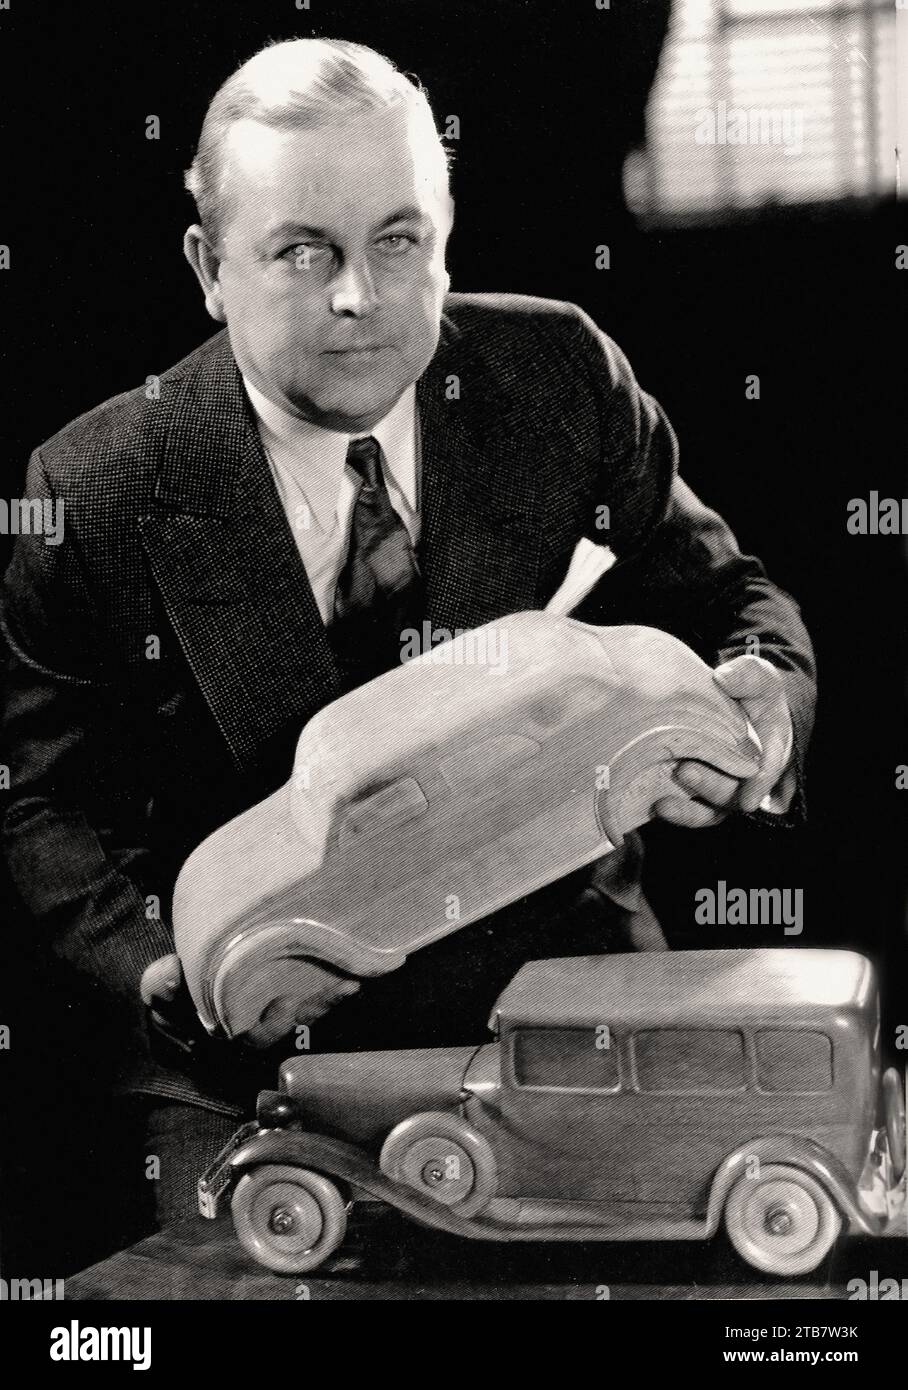 Carl Breer, progettista Chrysler Airflow - immagine auto d'epoca Foto Stock